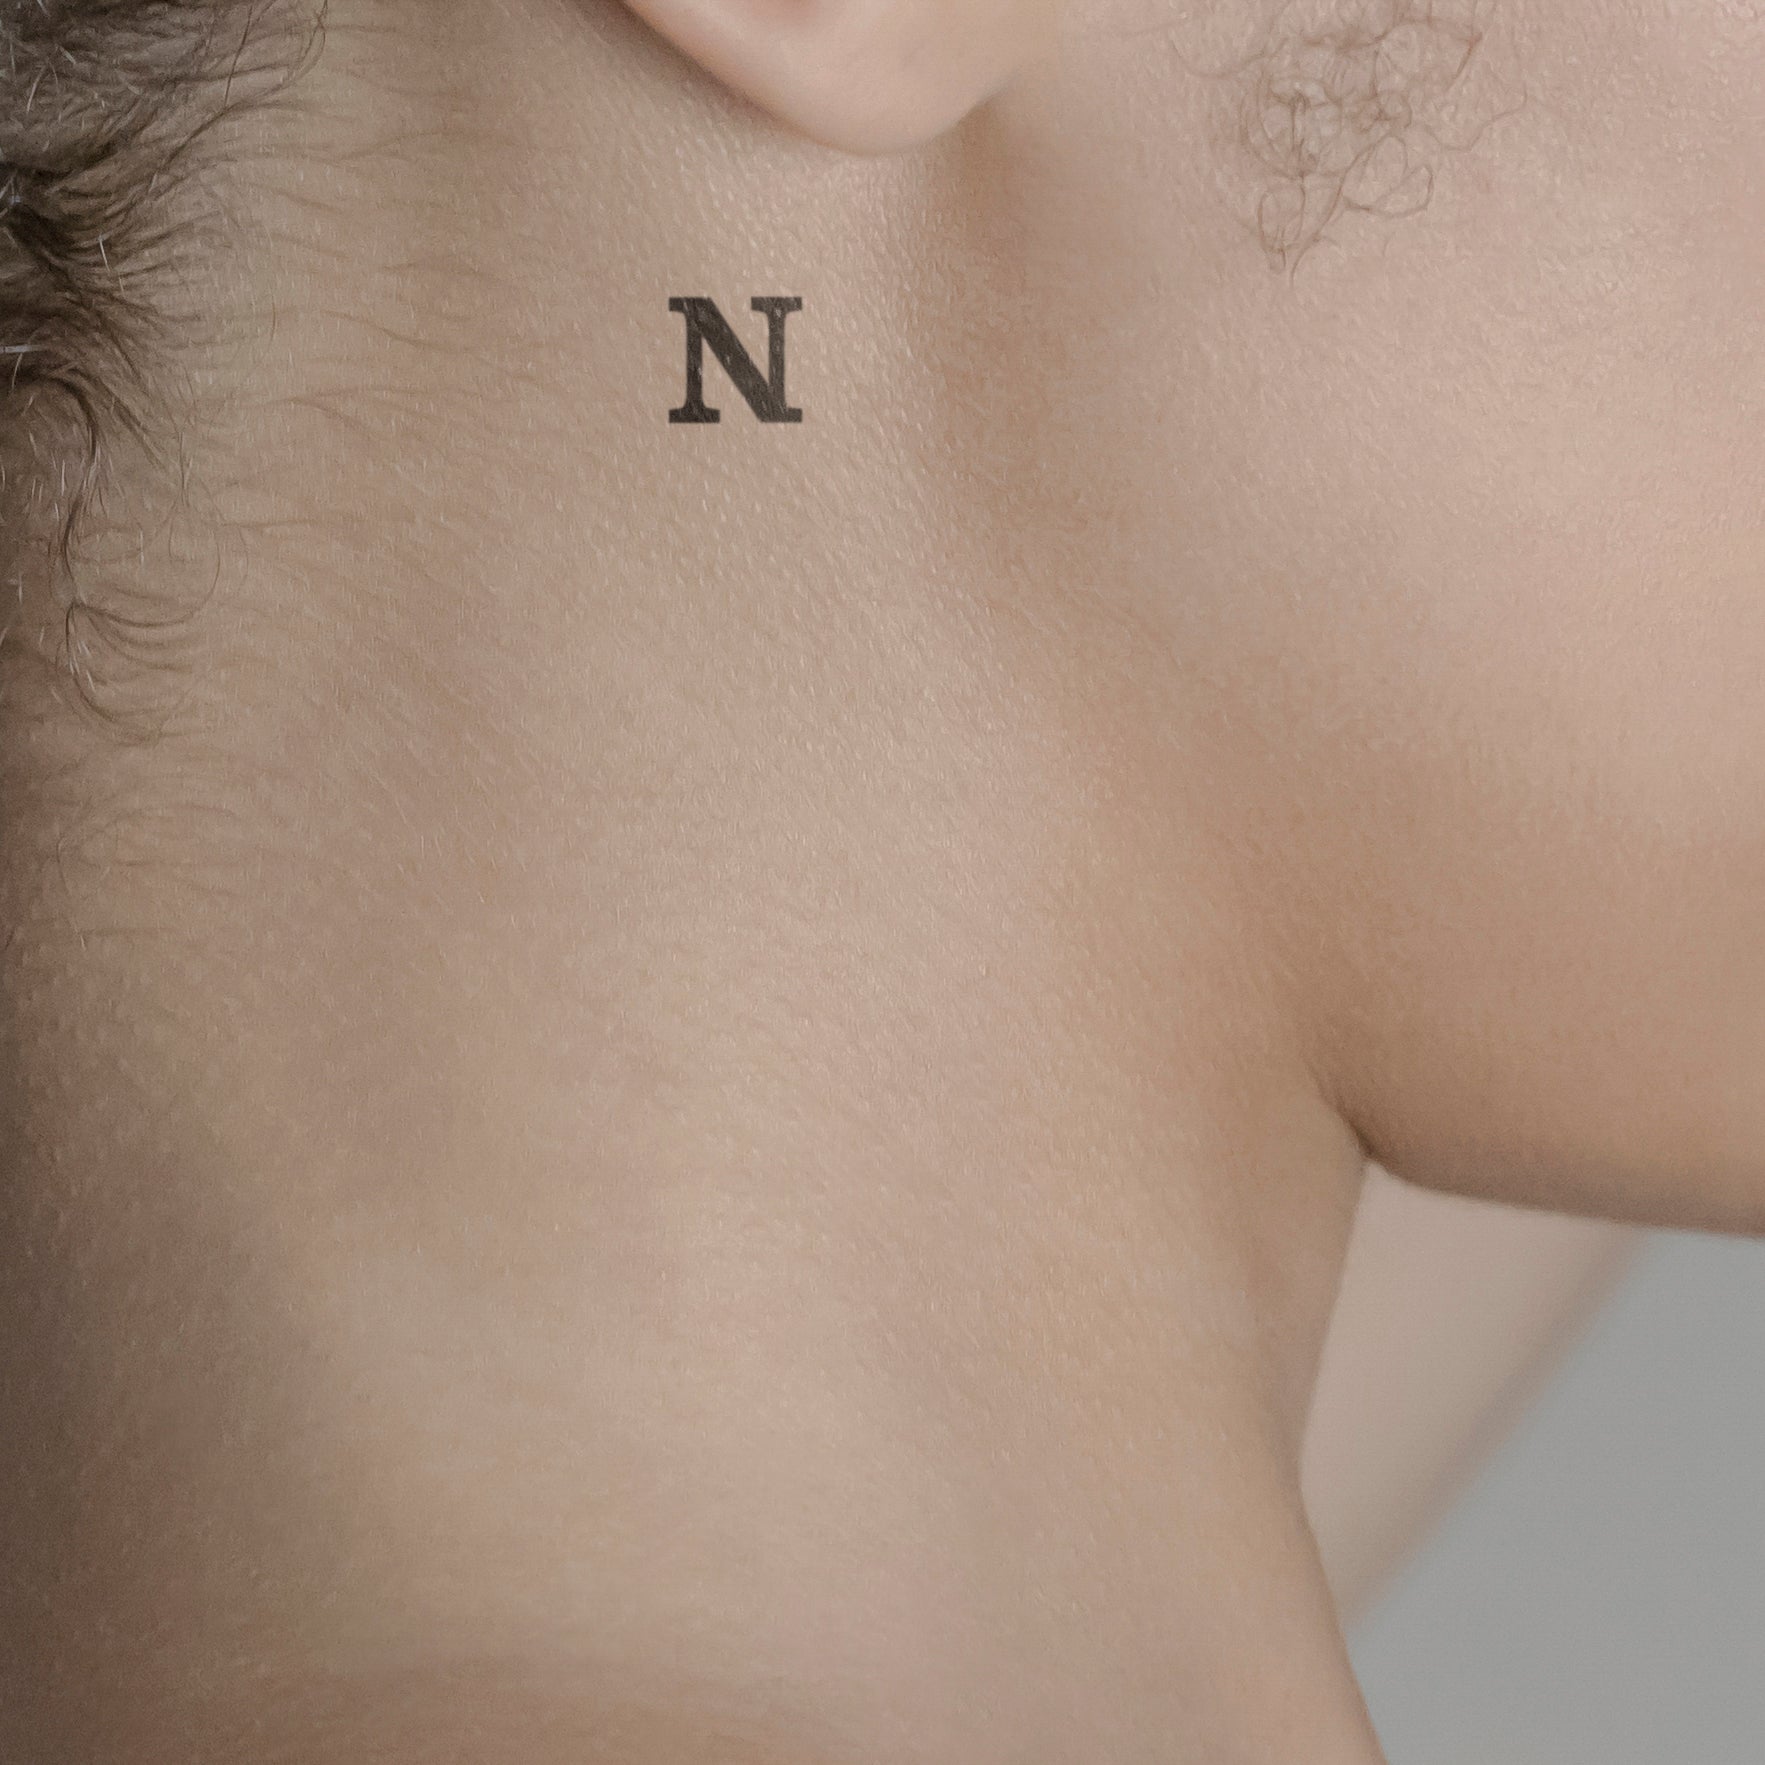 Schriftzug Tattoo Grossbuchstabe: N von minink, der Marke für temporäre Tattoos.